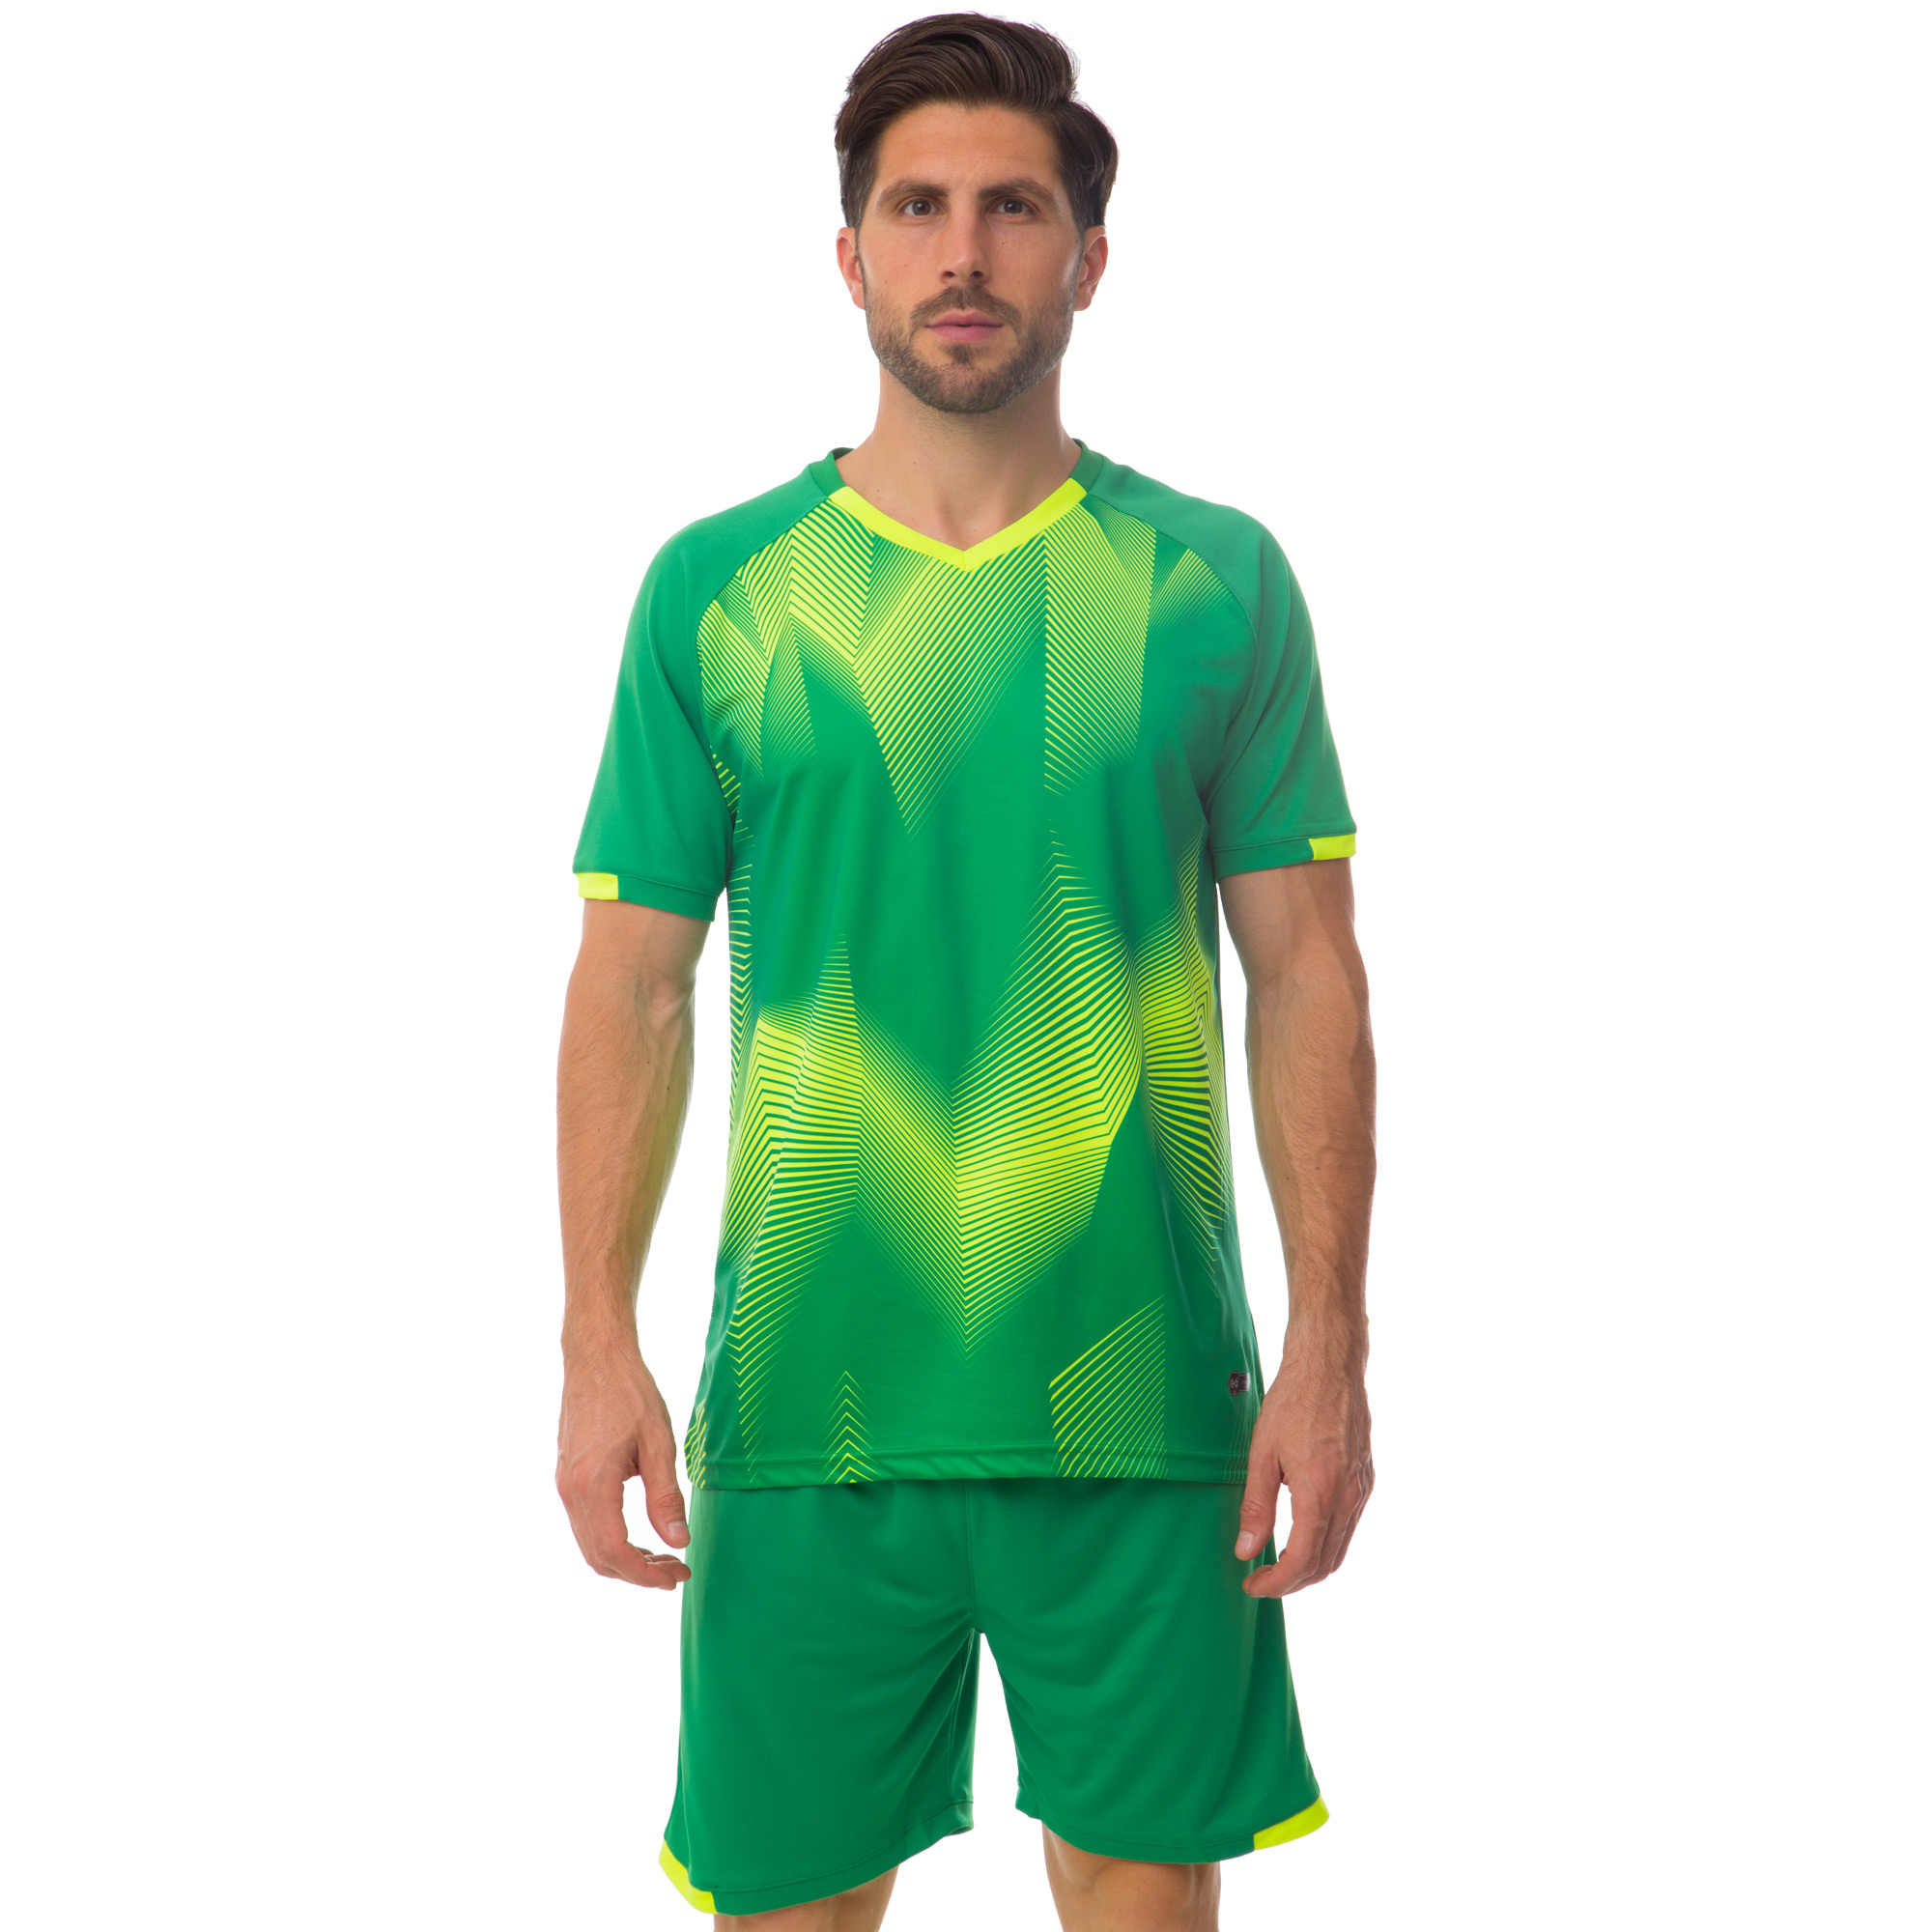 Мужская футбольная форма. Арис форма футбольная зеленая. Reebok футбольная форма мужская зелёная. Салатовая форма футбол. Зелёные футбольные формы зеленые.